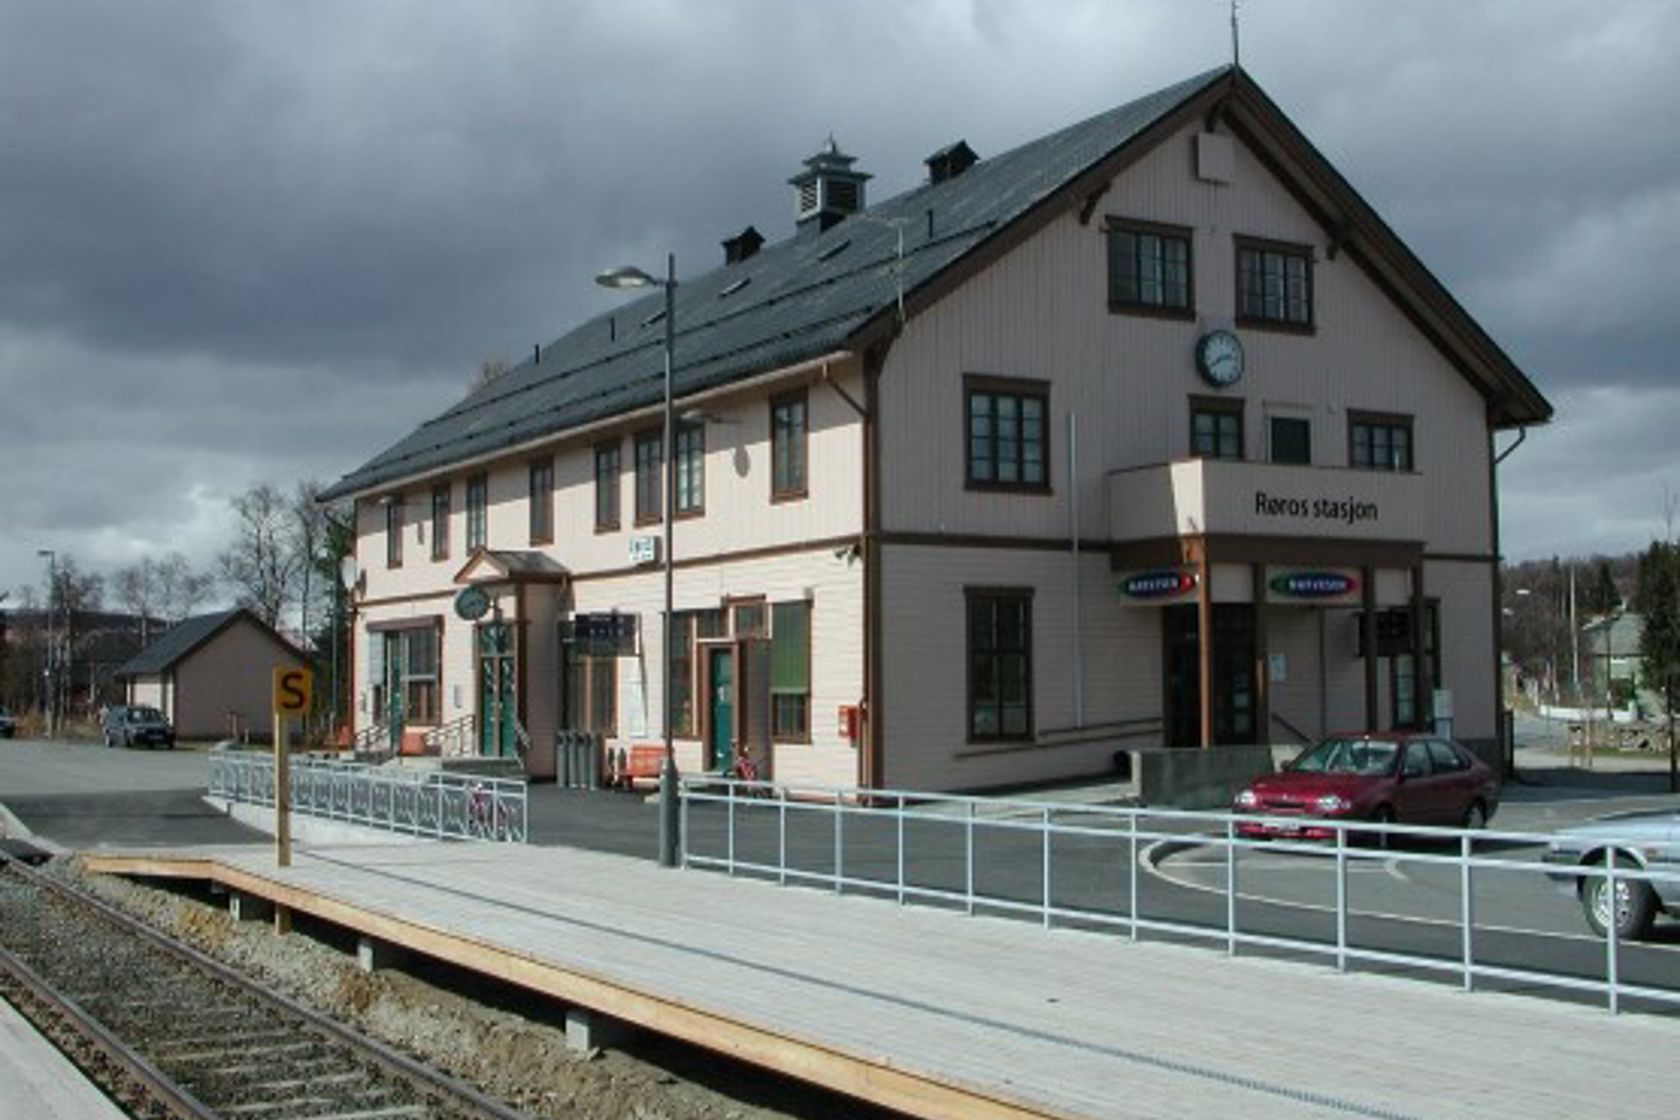 Exterior view of Røros station